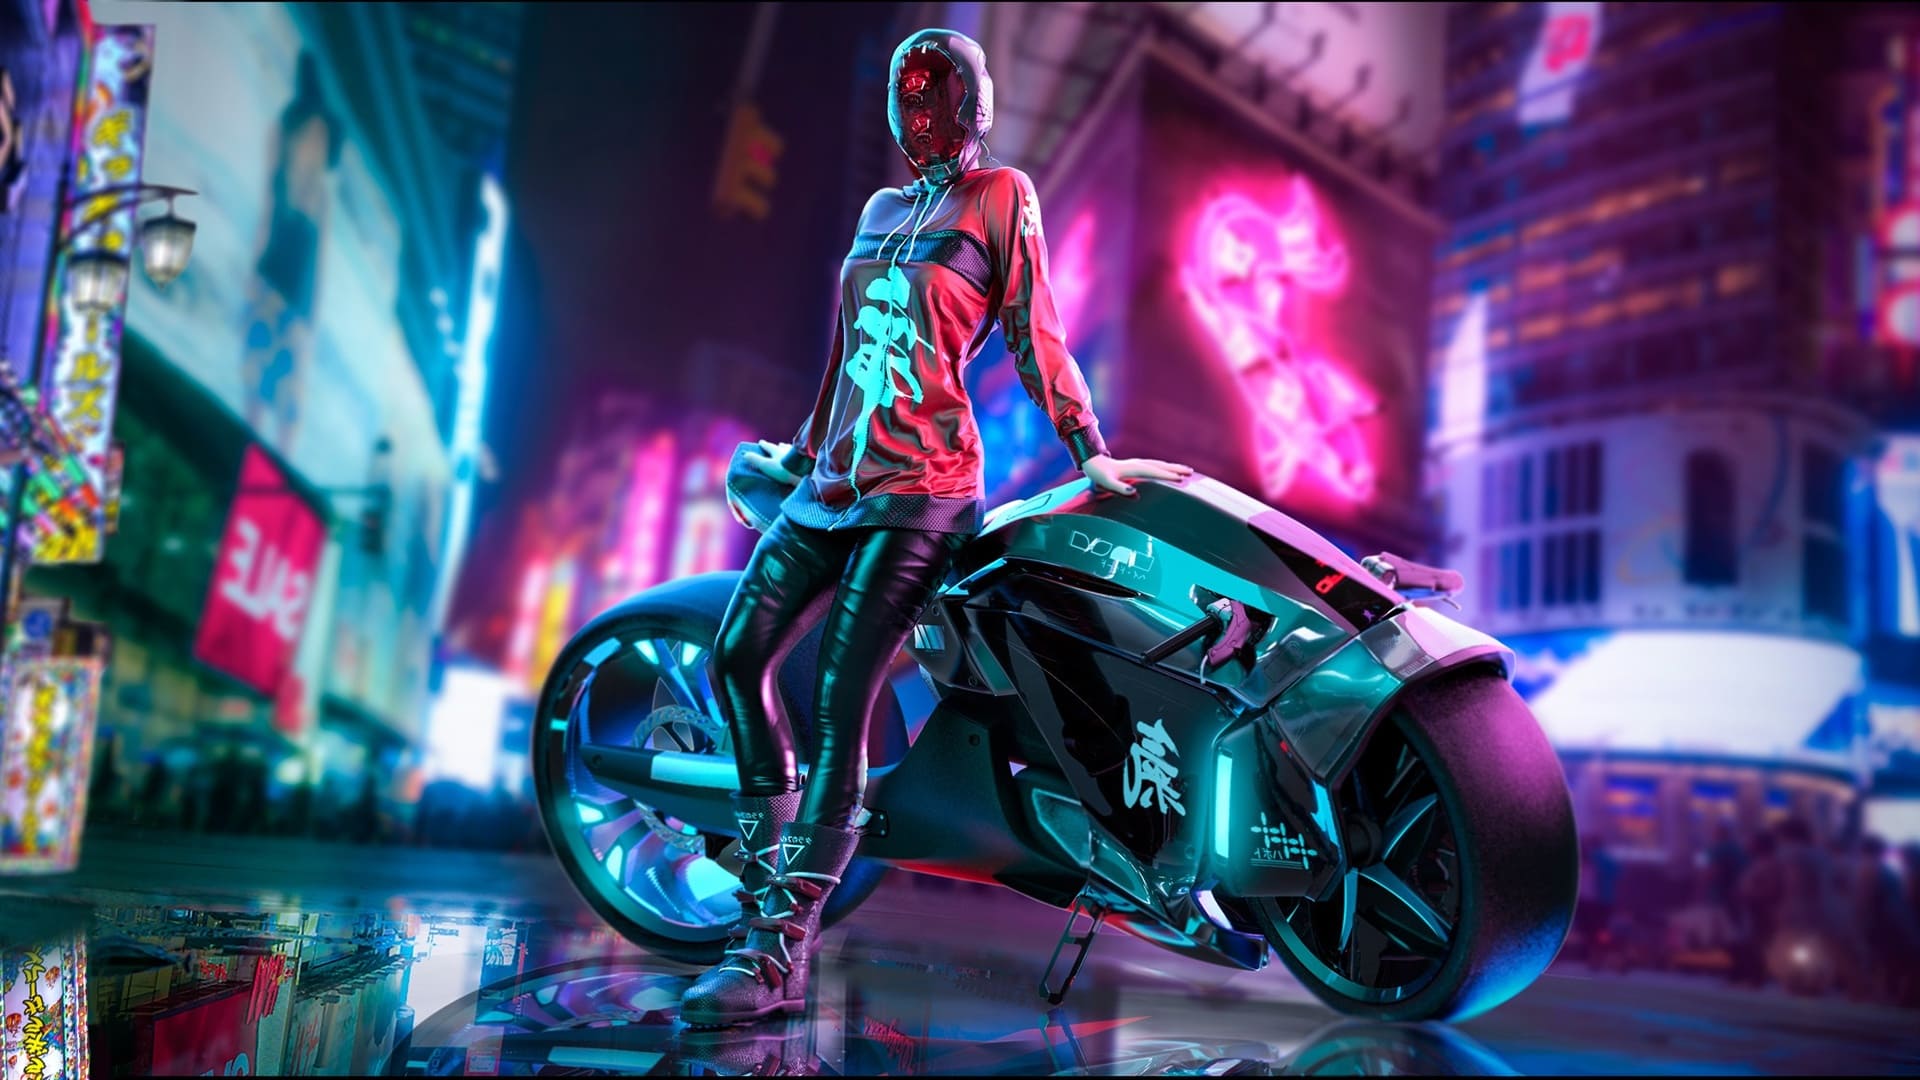 Màn hình nền Cyberpunk 4k là sự kết hợp hoàn hảo giữa kĩ thuật và nghệ thuật. Với độ phân giải cao và màu sắc tuyệt đẹp, hình ảnh này sẽ khiến bạn đắm chìm trong thế giới tương lai đầy bí ẩn và phấn khích.